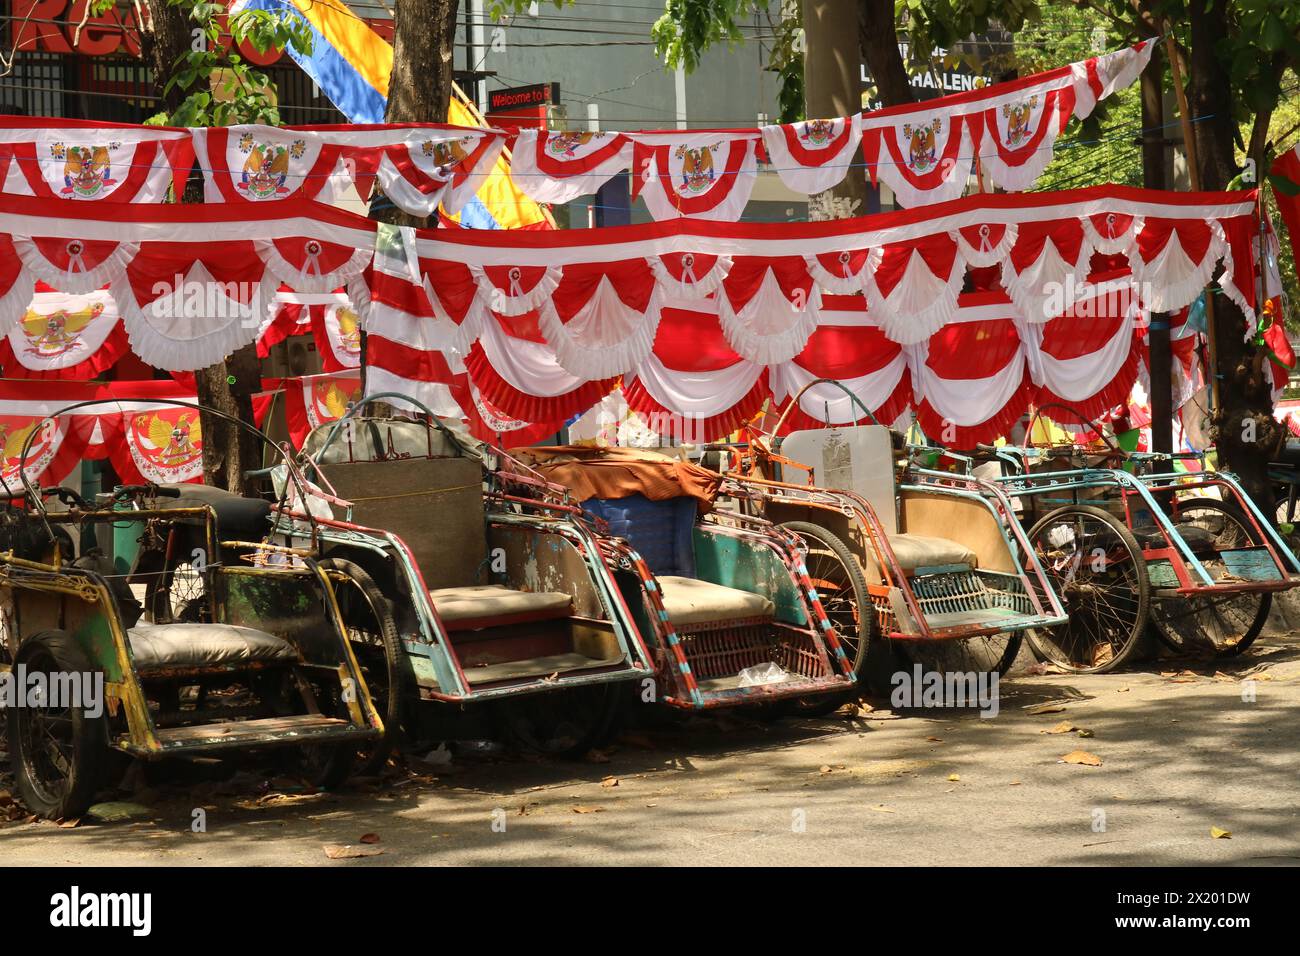 Flaggenhändler verkaufen in einer Fußgängerzone. Diese Flaggen werden normalerweise als Dekoration während der Gedenkfeier zum indonesischen Unabhängigkeitstag verwendet. Stockfoto